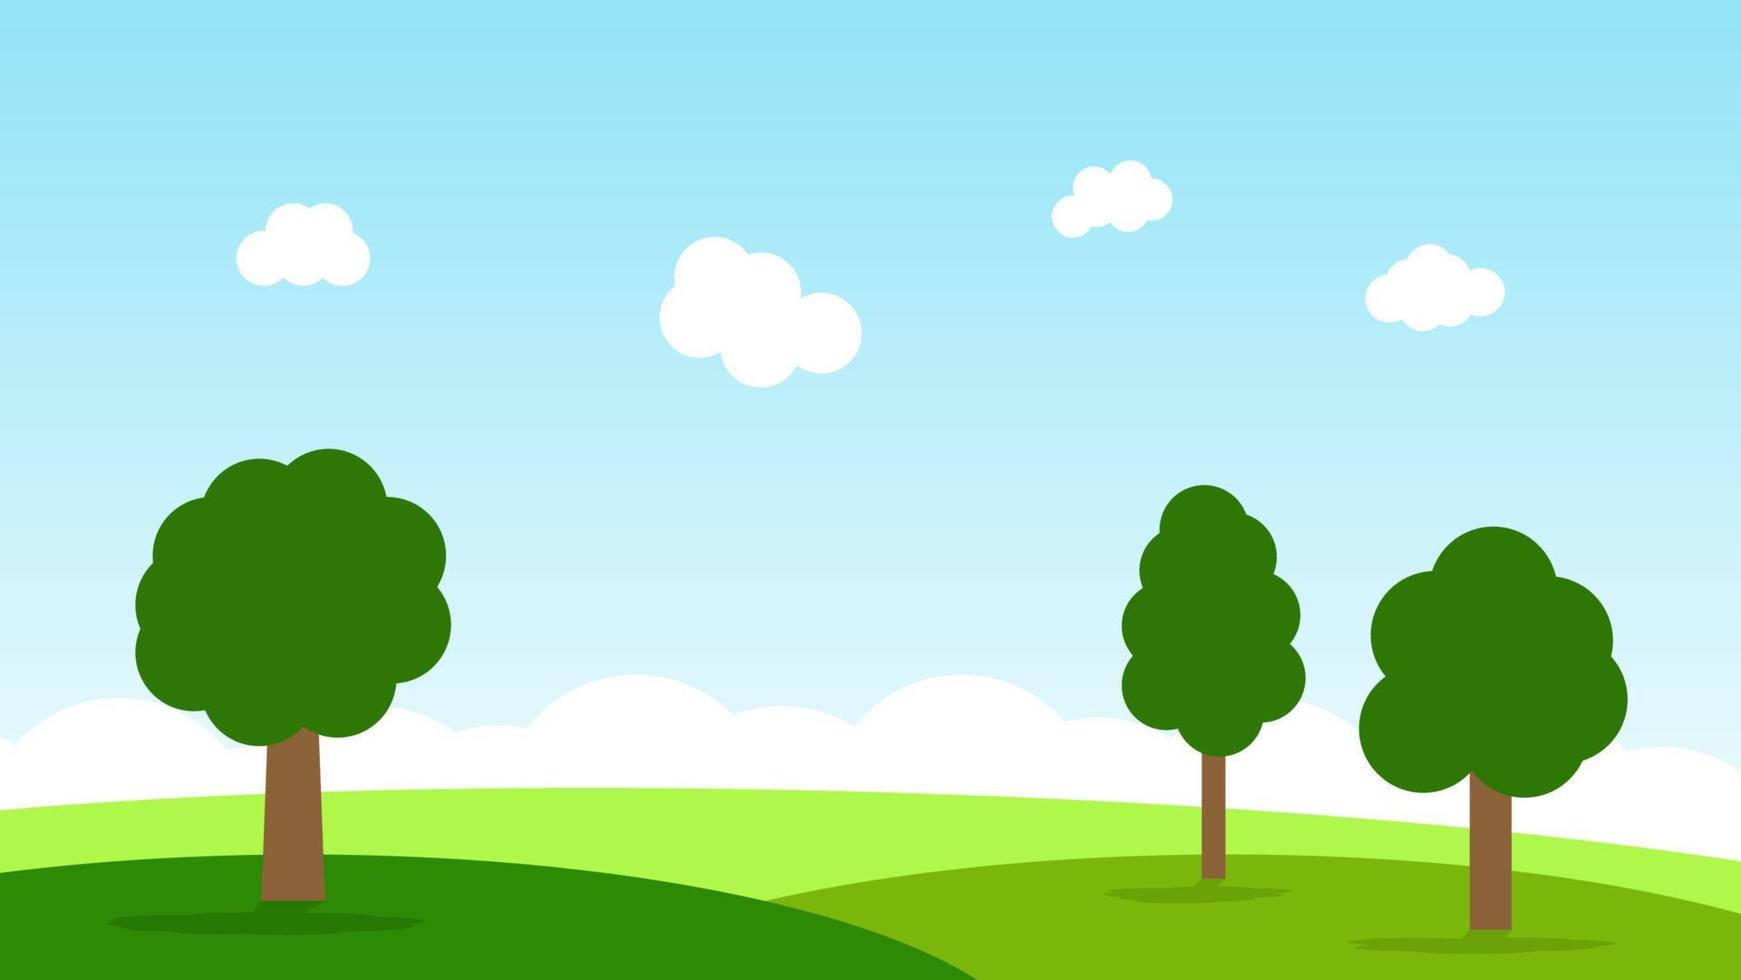 Landschaftskarikaturszene mit grünen Bäumen auf Hügeln und weißer flaumiger Wolke im Sommerhintergrund des blauen Himmels vektor